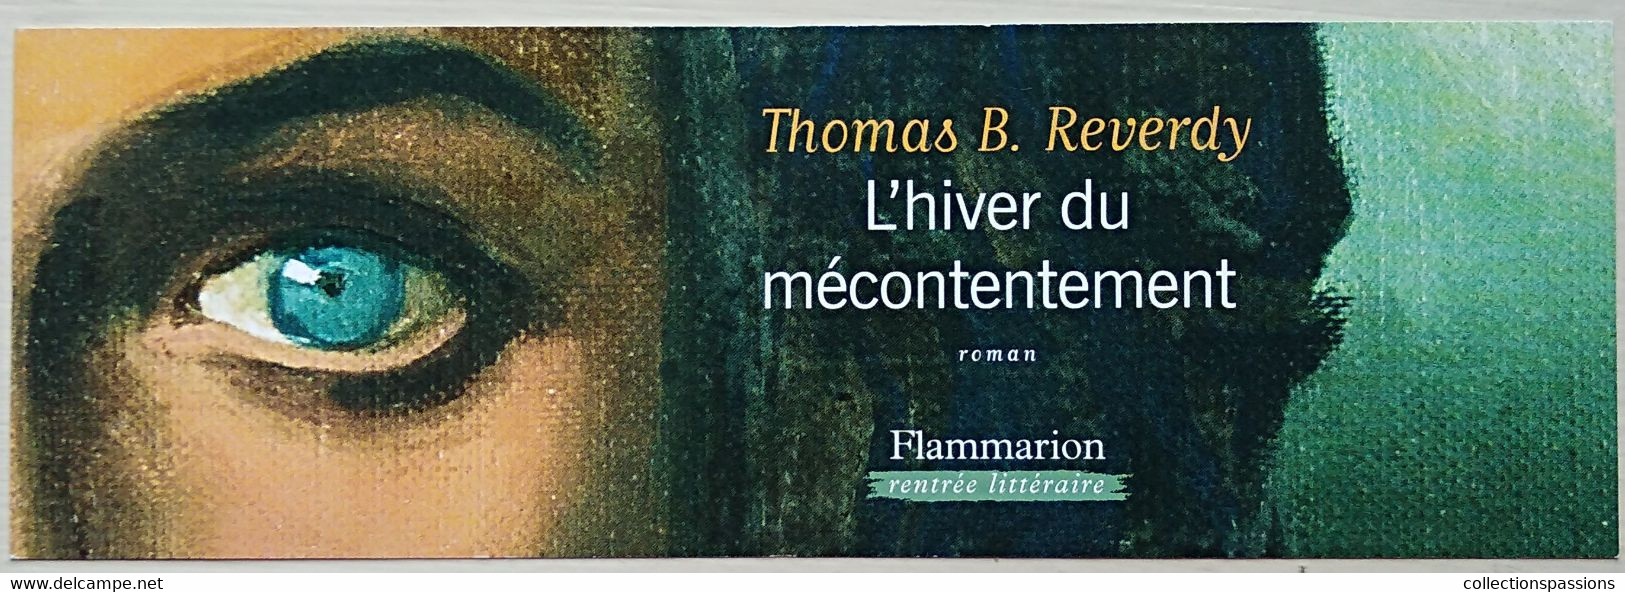 Bookmarks - SIGNET - MARQUE PAGES - L'hiver du mécontentement. Thomas B.  Reverdy 